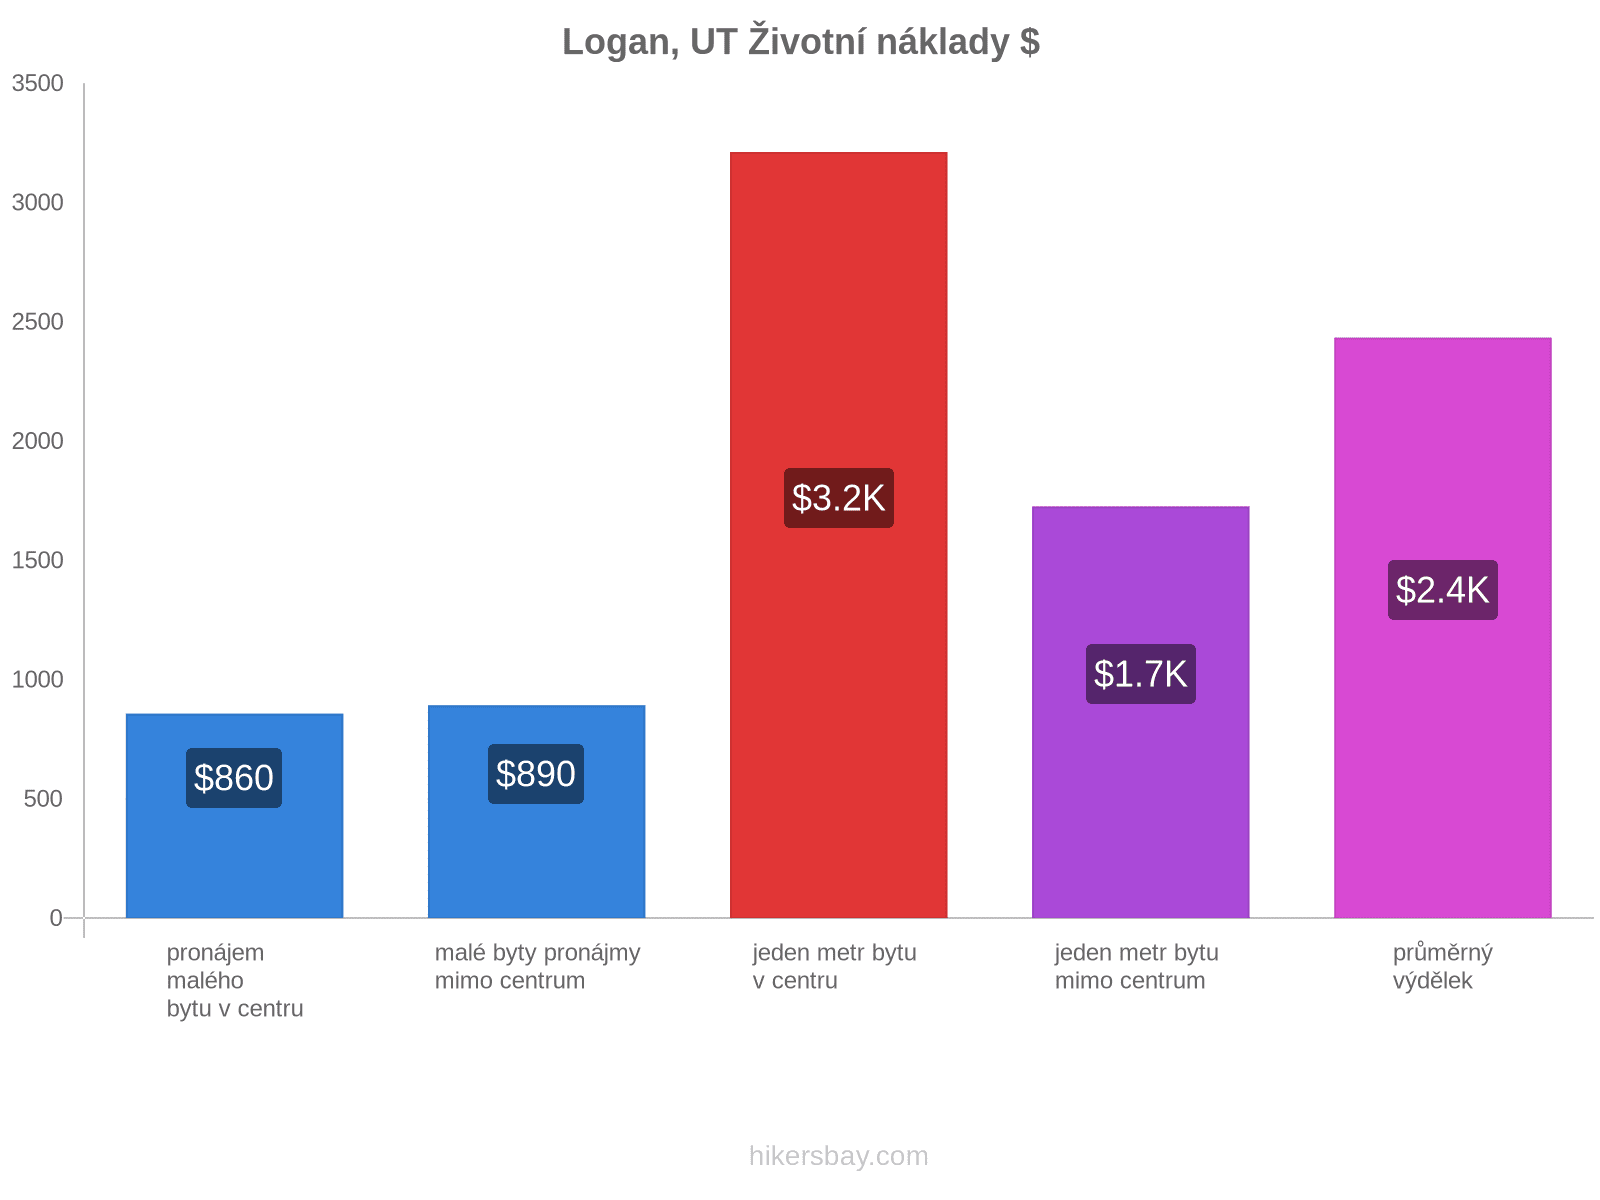 Logan, UT životní náklady hikersbay.com